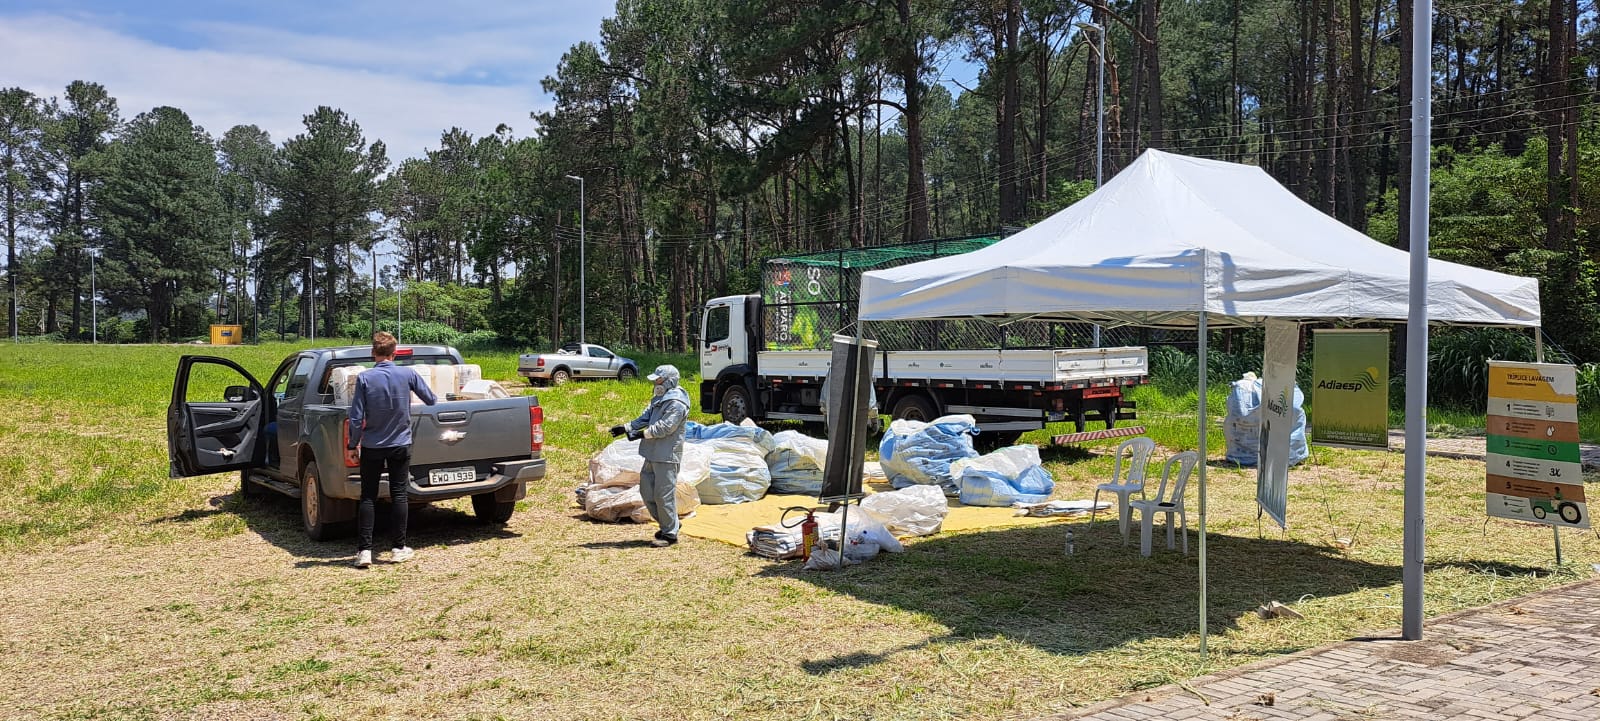 Prefeitura realiza Dia do Campo Limpo: descarte responsável de embalagens de agrotóxicos